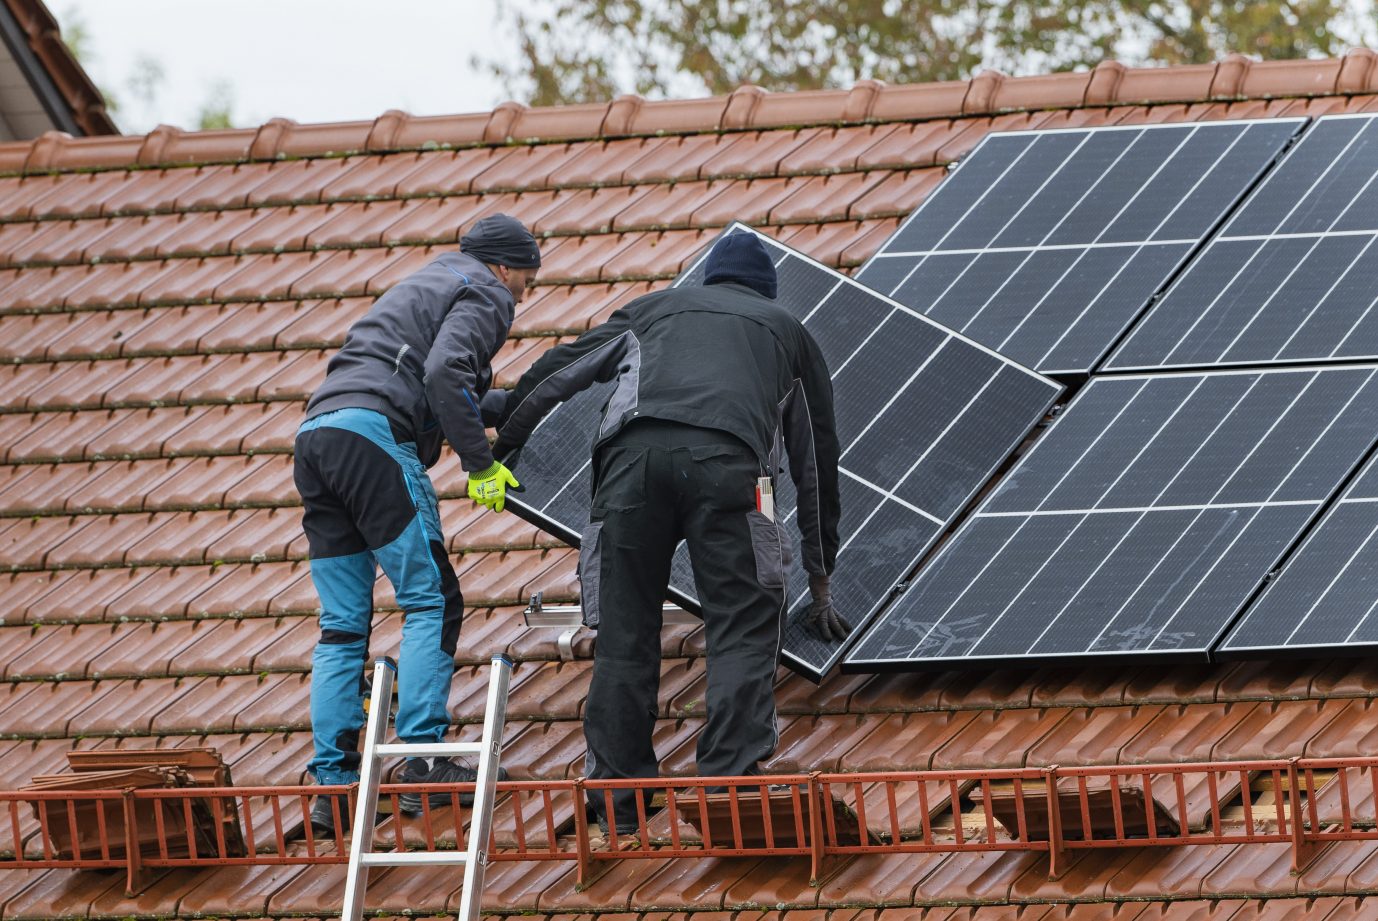 Hausdach wird mit Solarpanels bestückt: Der Koalitionsvertrag sieht strenge Auflagen beim Hausbau vor, um CO2 einzusparen